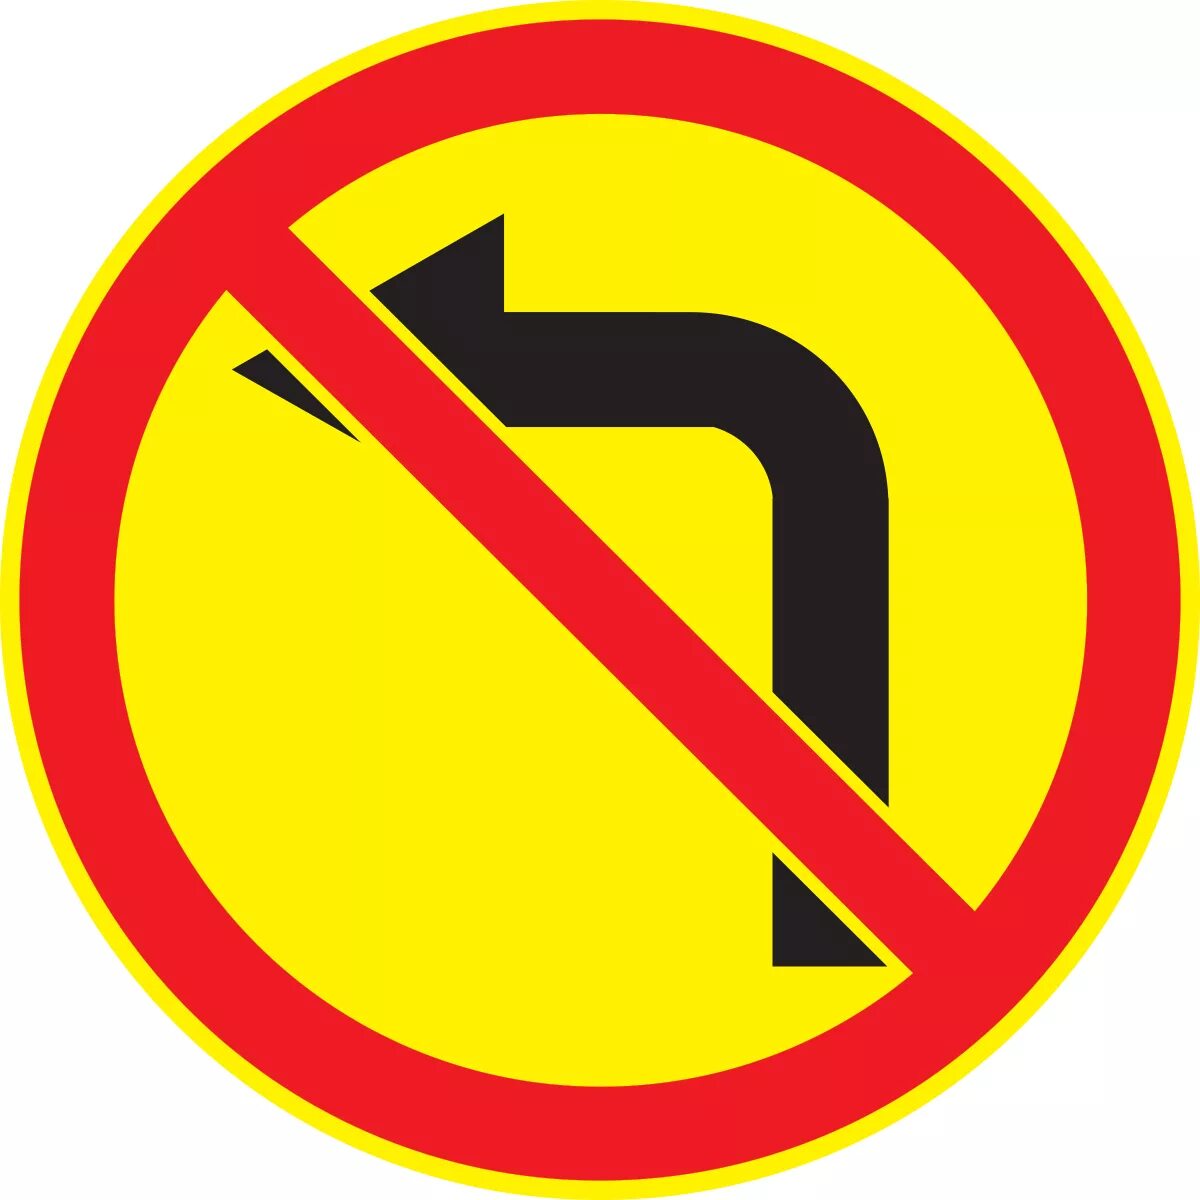 Запрещенный поворот. Знак 3.18.1 поворот направо запрещен. Знак 3.18.2. Дорожные знаки поворот налево запрещен. Дорожный знак 3.18.2 "поворот налево запрещен" (вpeмeнный.